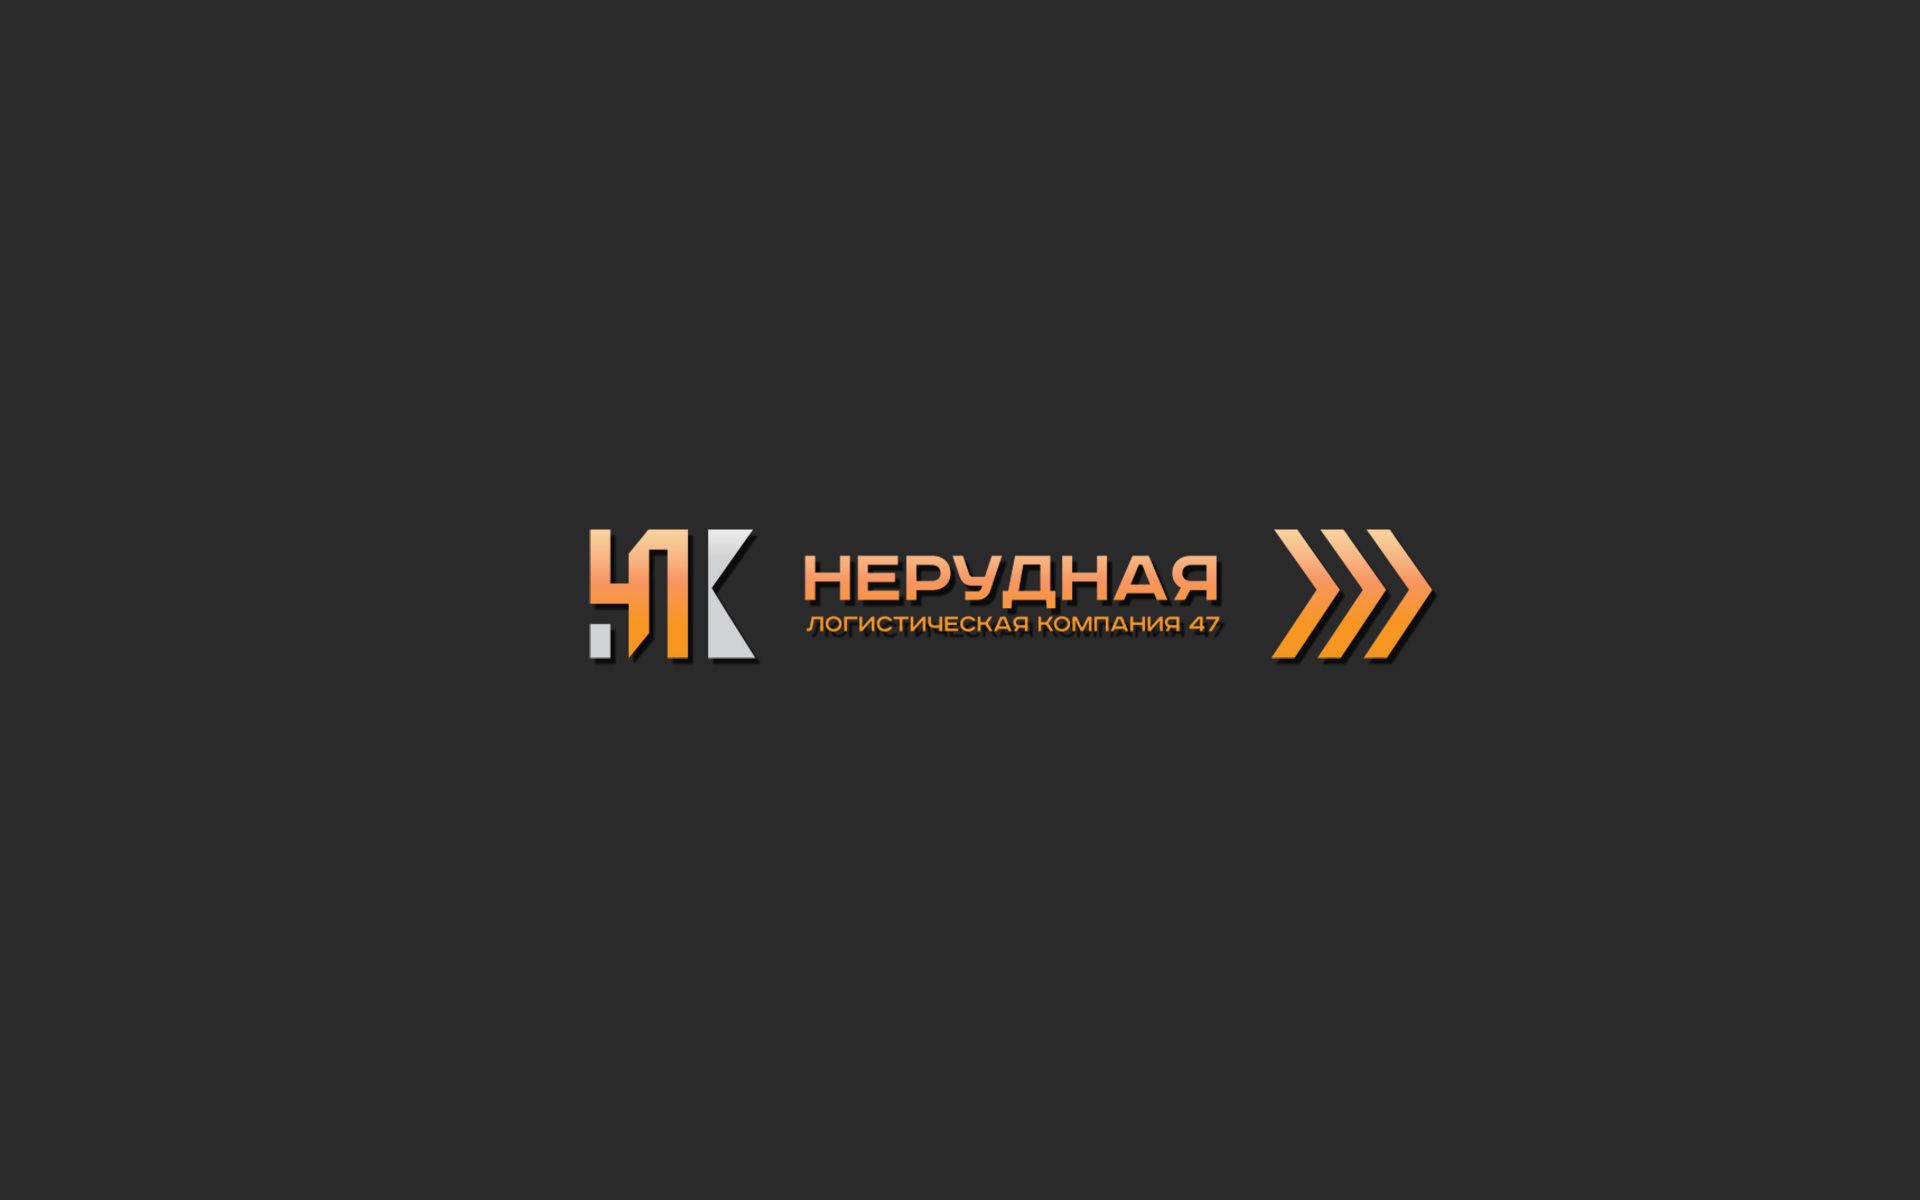 Лого и фирменный стиль для Нерудная логистическая компания 47 (НЛК 47) - дизайнер Alphir